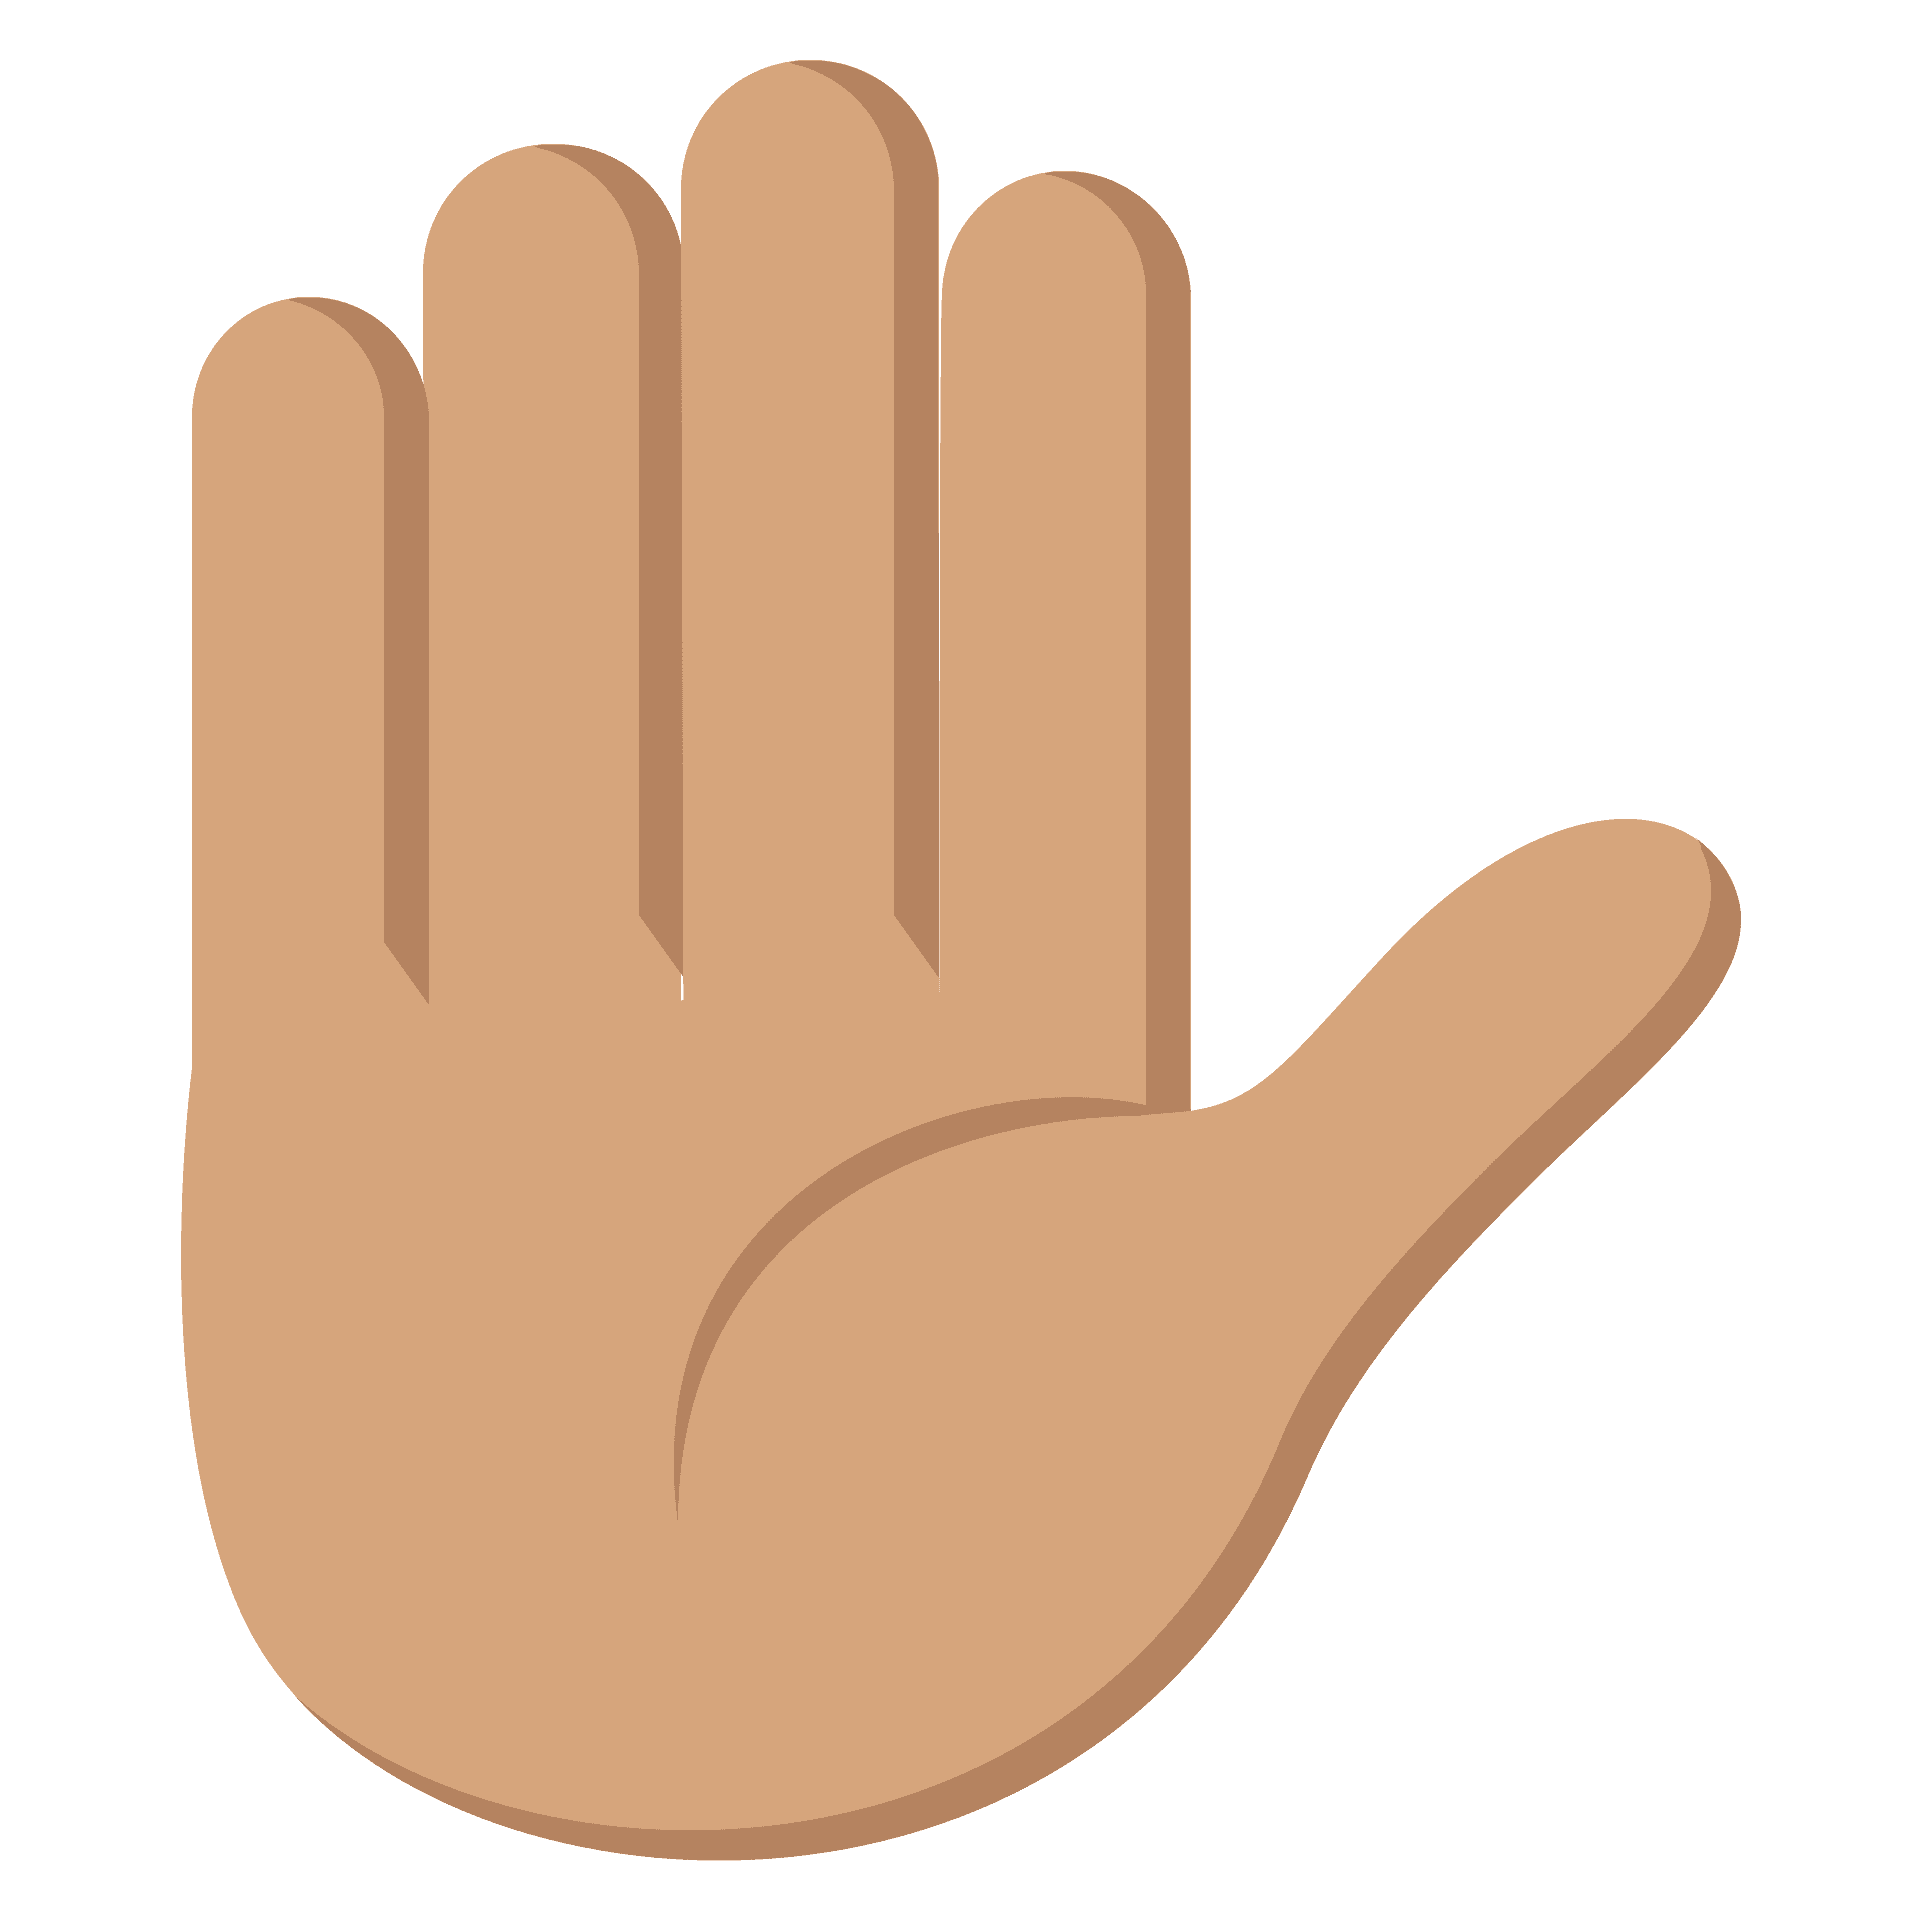 Emoji del dorso de la mano levantada
